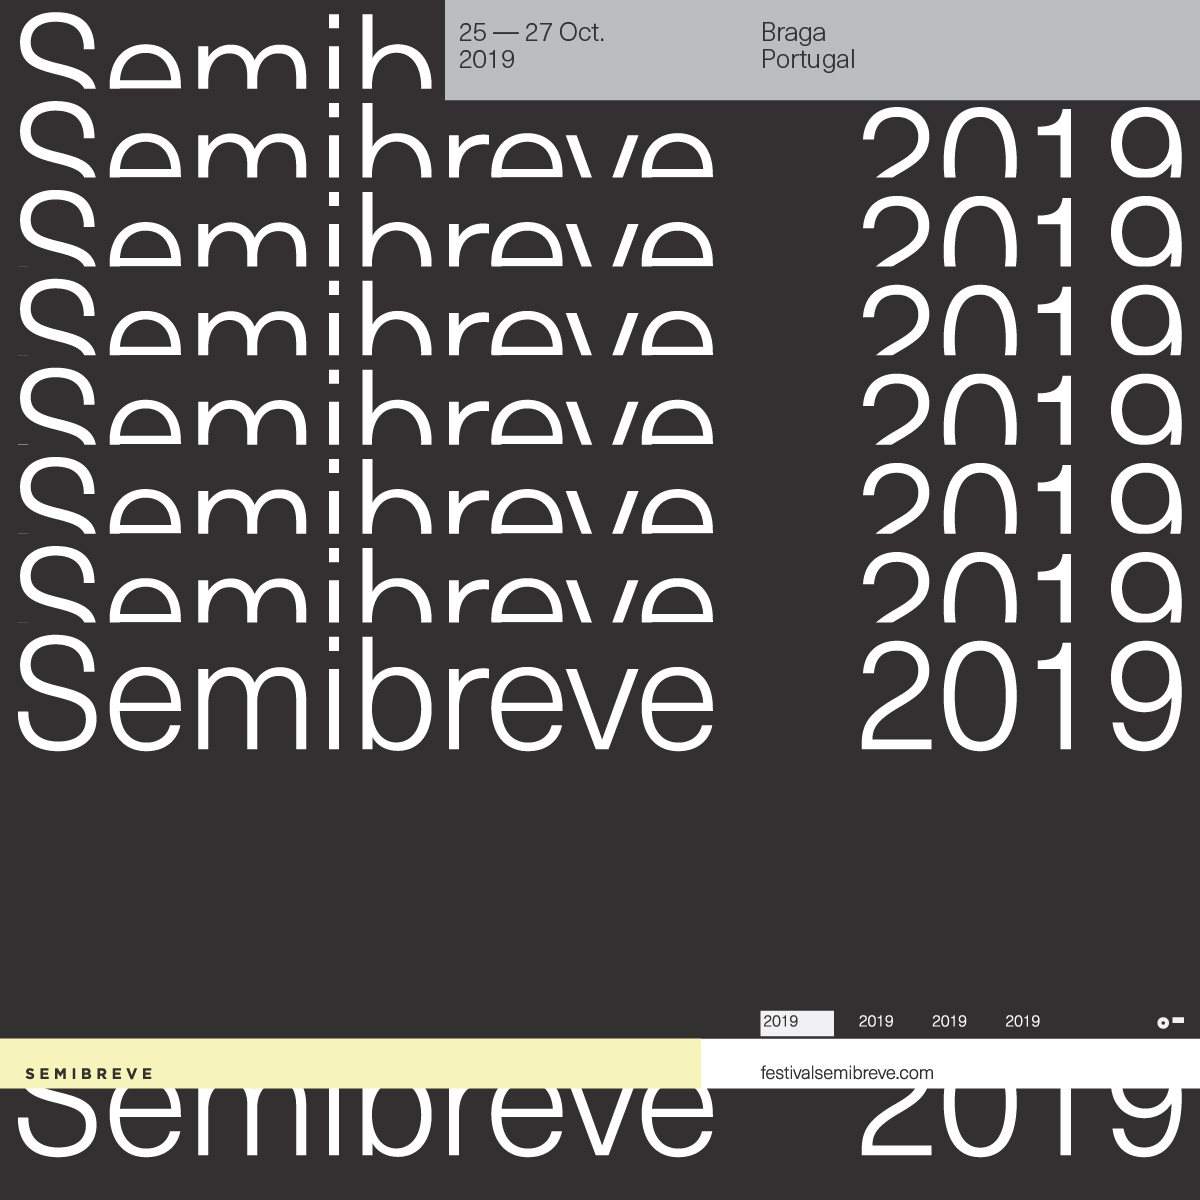 Semibreve Festival - Página frontal